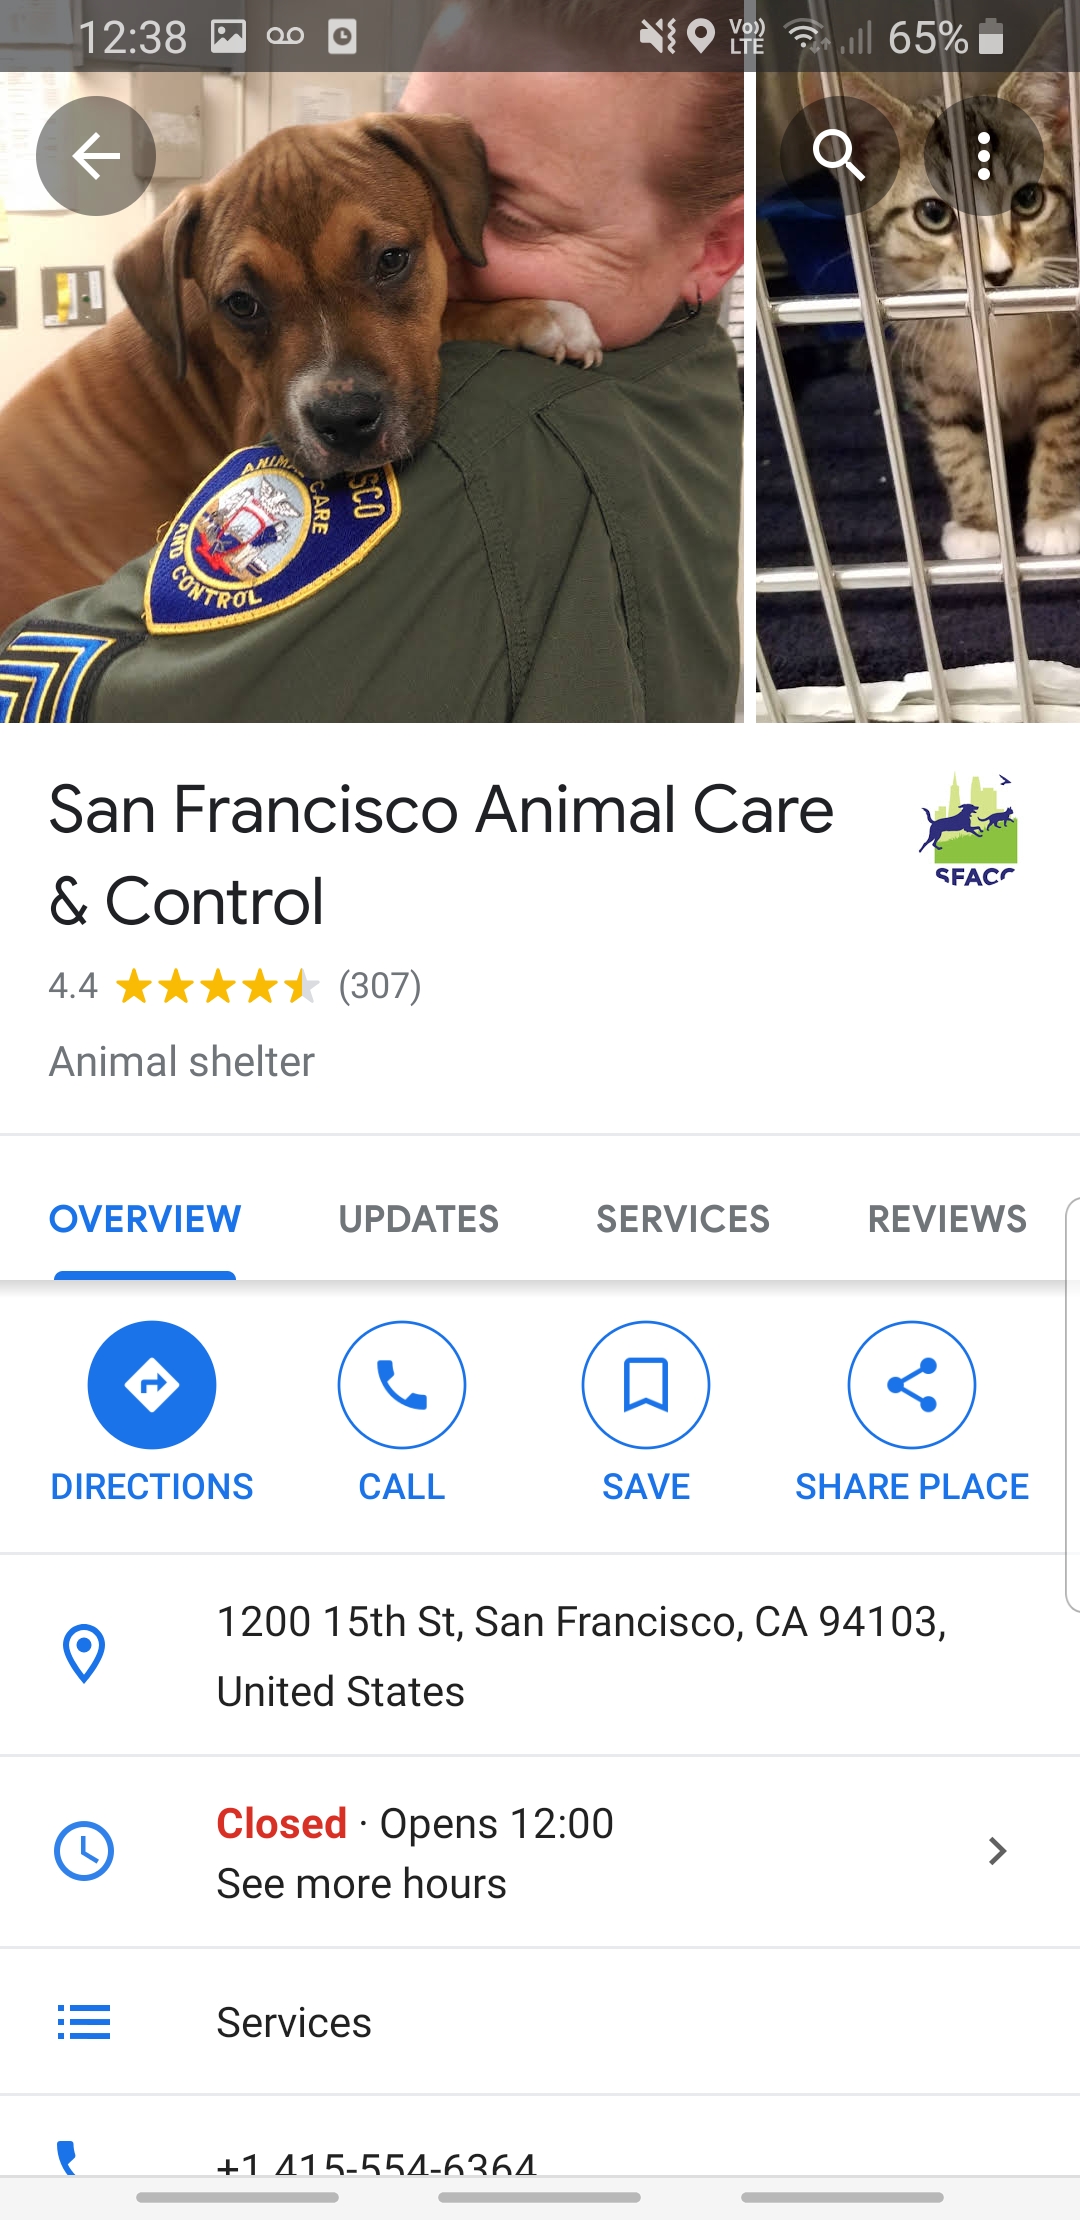 Captura de tela do Google Maps mostrando a página comercial do San Francisco Animal Care and Control, com opções de rotas, ligar, salvar ou compartilhar o local